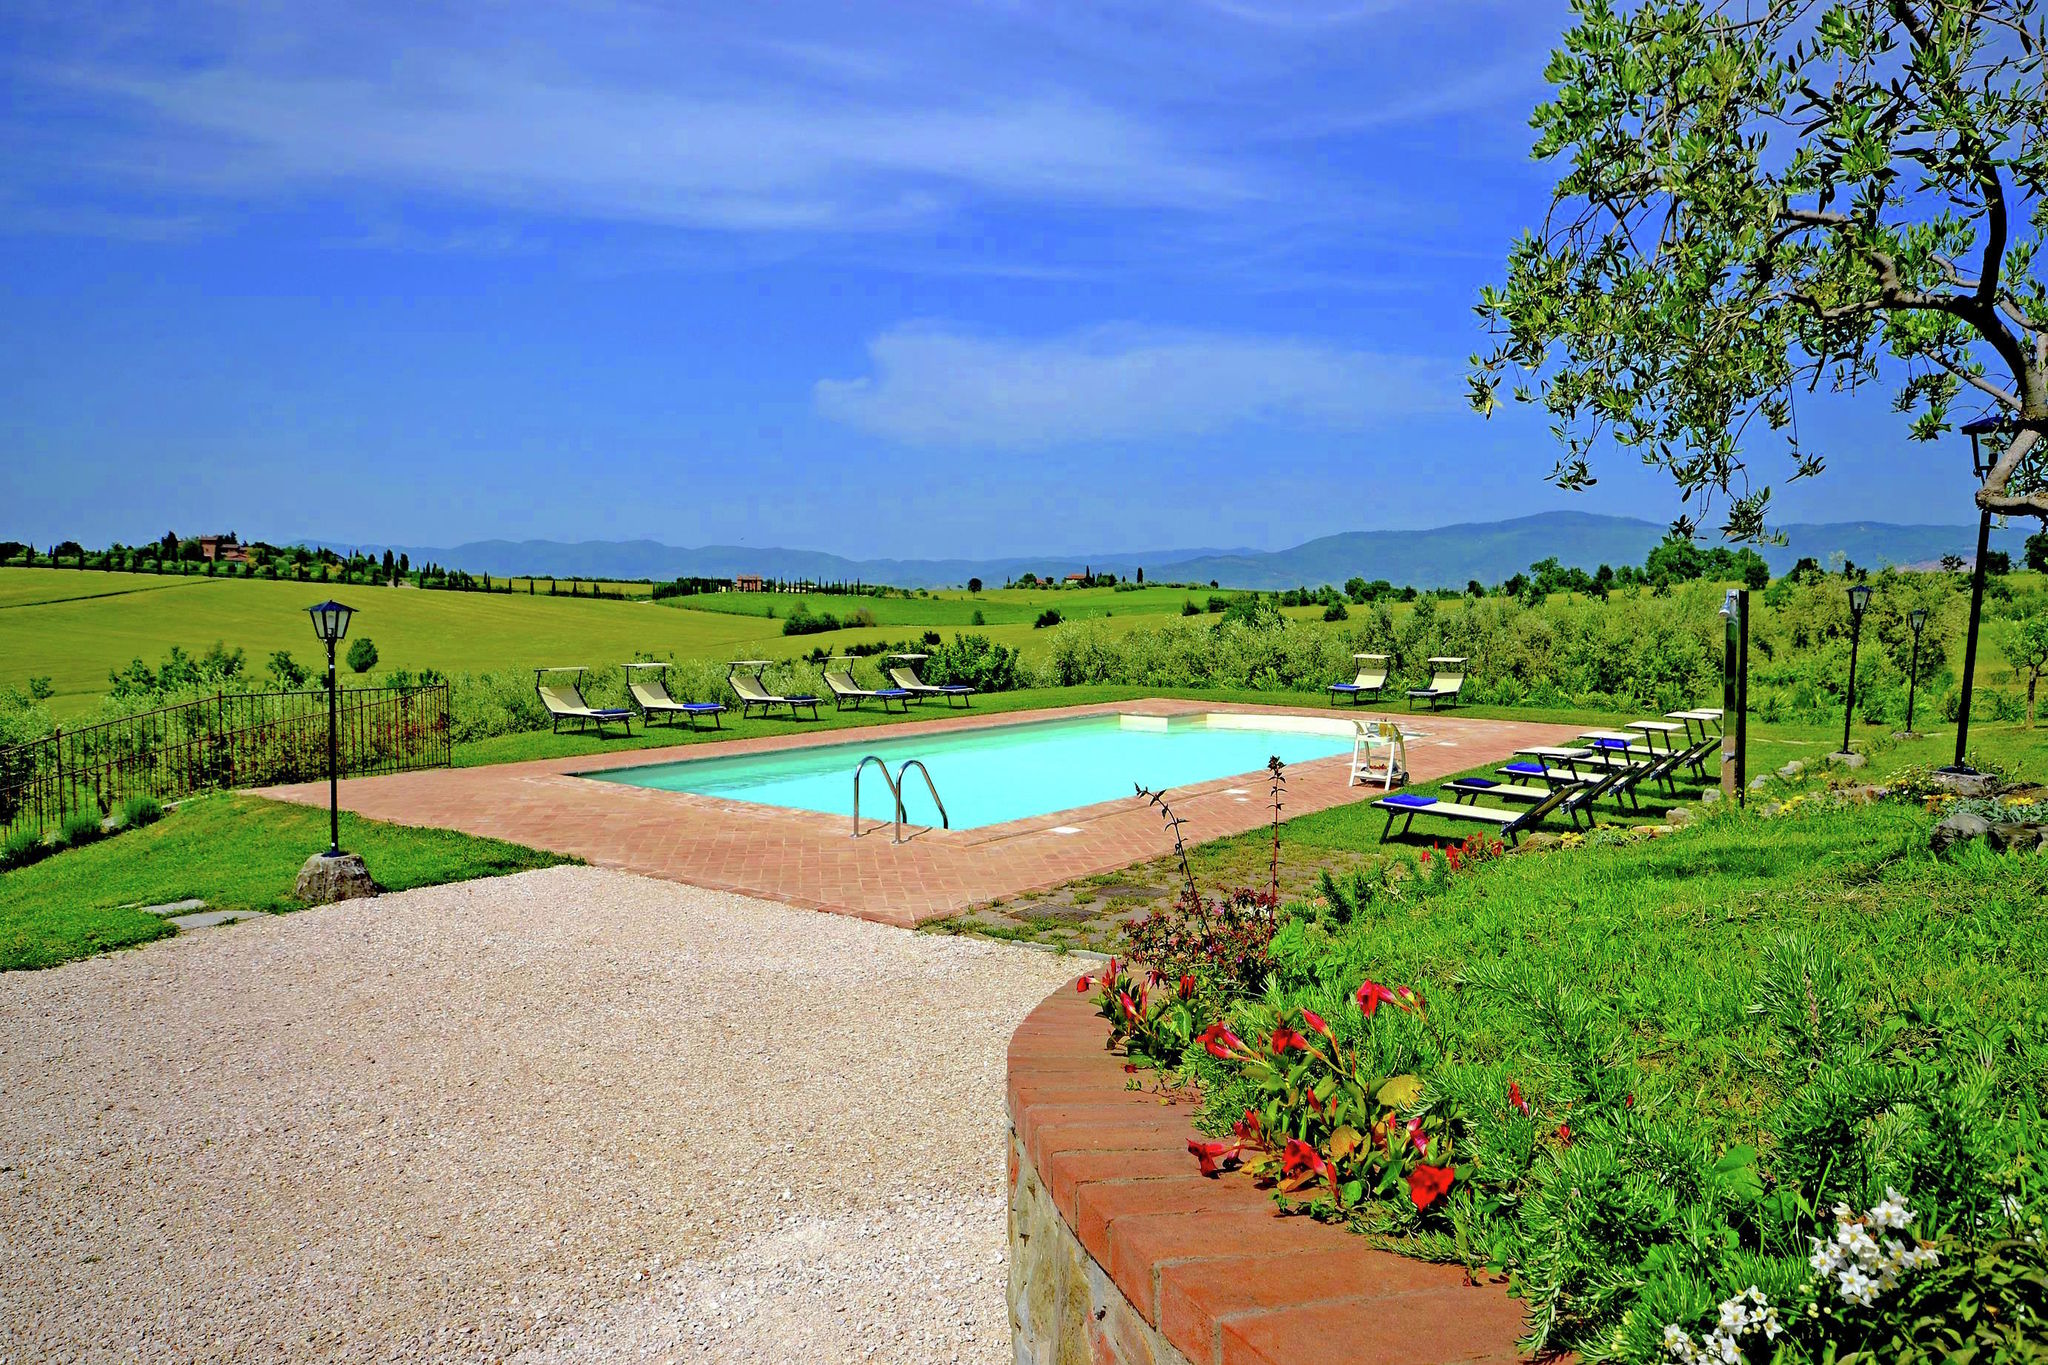 Villa met privézwembad in de heuvels, dichtbij Cortona, prachtige omgeving